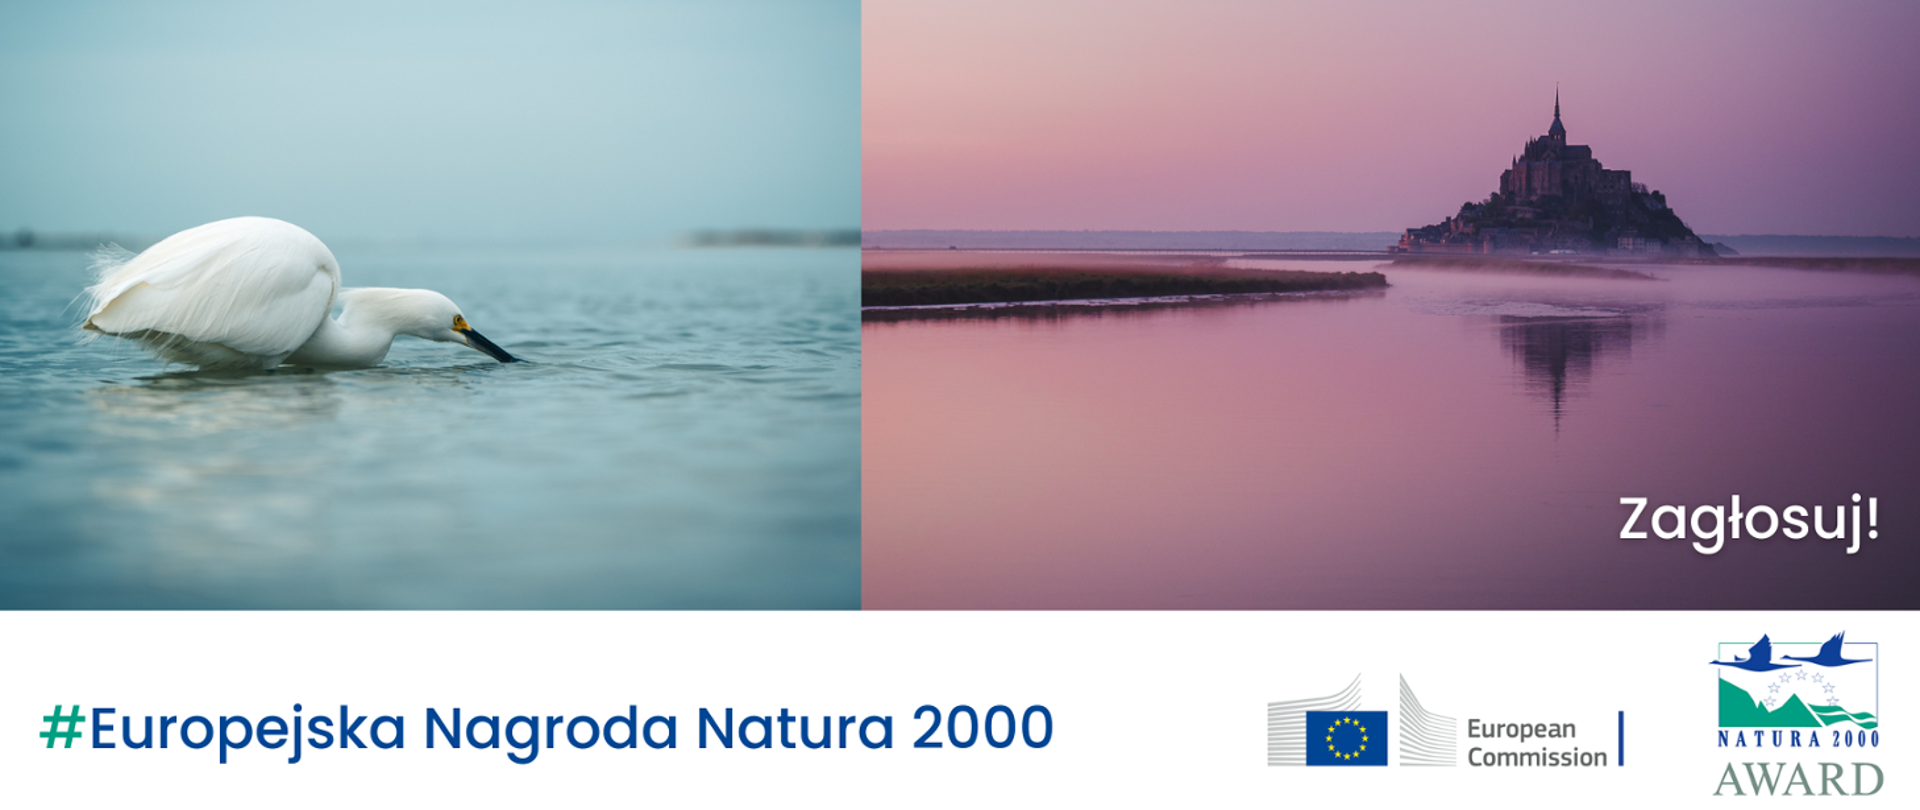 Dwa zdjęcia zestawione ze sobą. Na jednym biały ptak na wodzie, na drugim krajobraz z budowlą typu zamek i napis: Zagłosuj!
Na dole napis #Europejska Nagroda Natura 2000 i dwa logotypy: Komisji Europejskiej i Europejskiej Nagrody Natura 2000